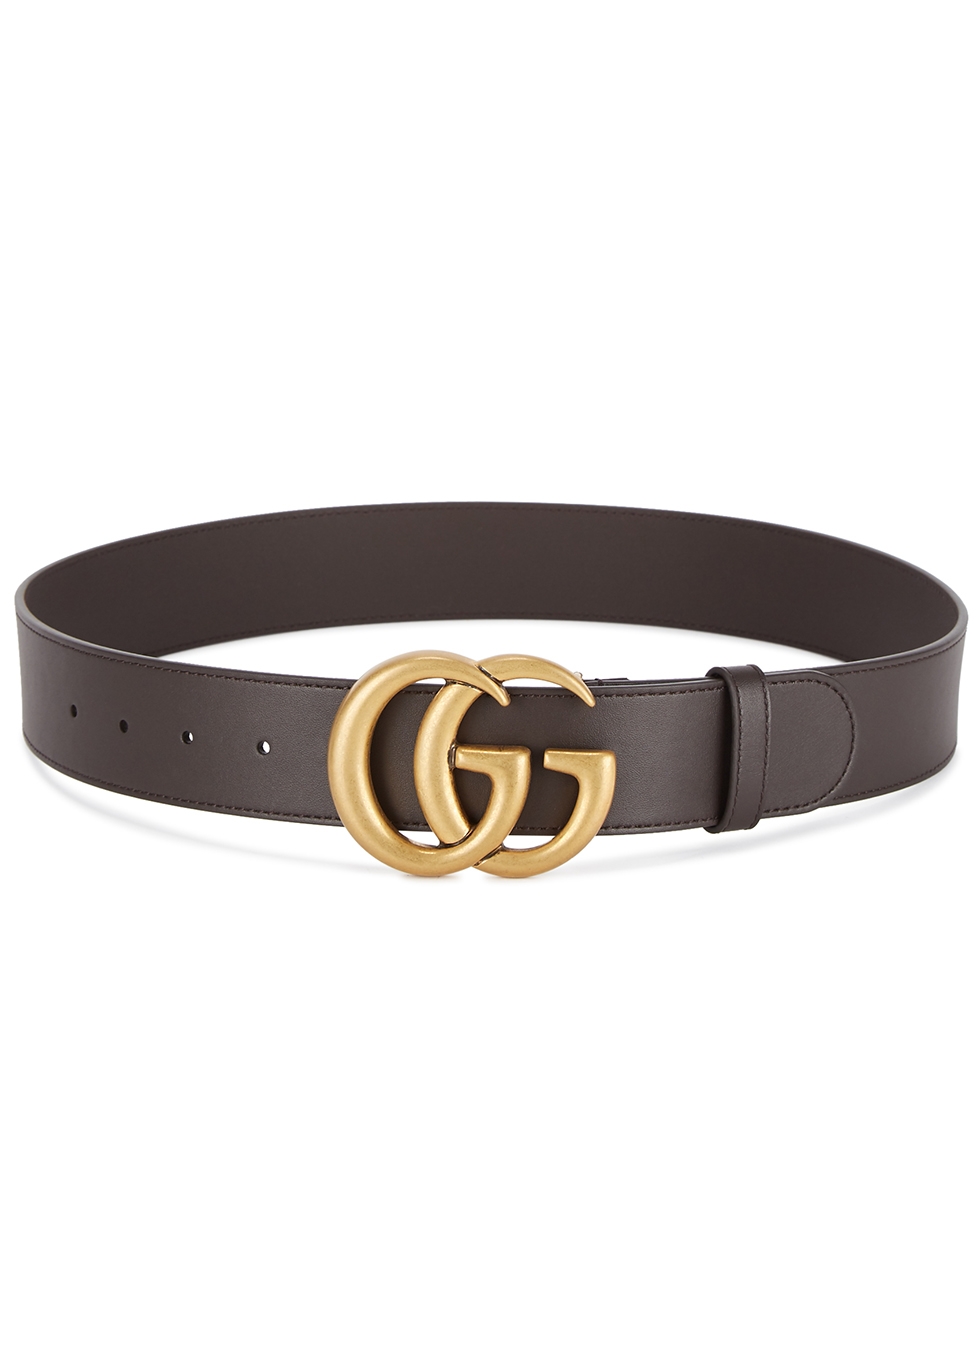 gg brown belt